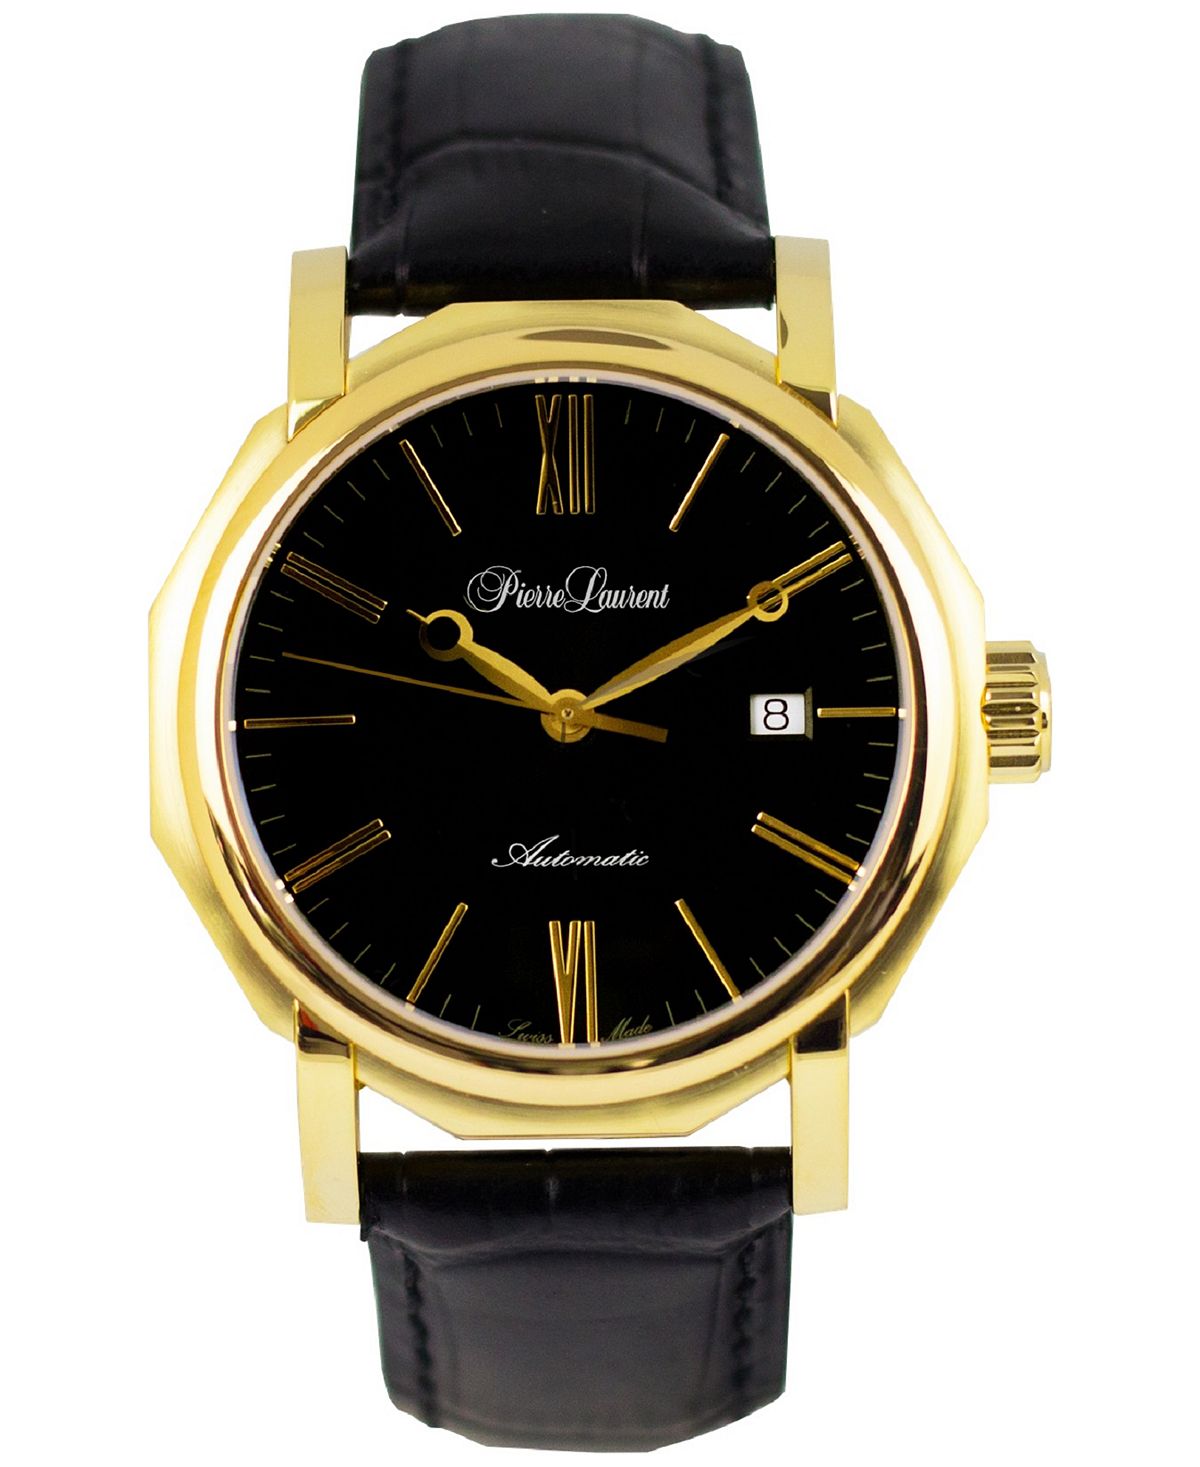 Мужские швейцарские автоматические семейные часы с черным кожаным ремешком, 46 мм Pierre Laurent bulk chain model gold gold color plated bangle